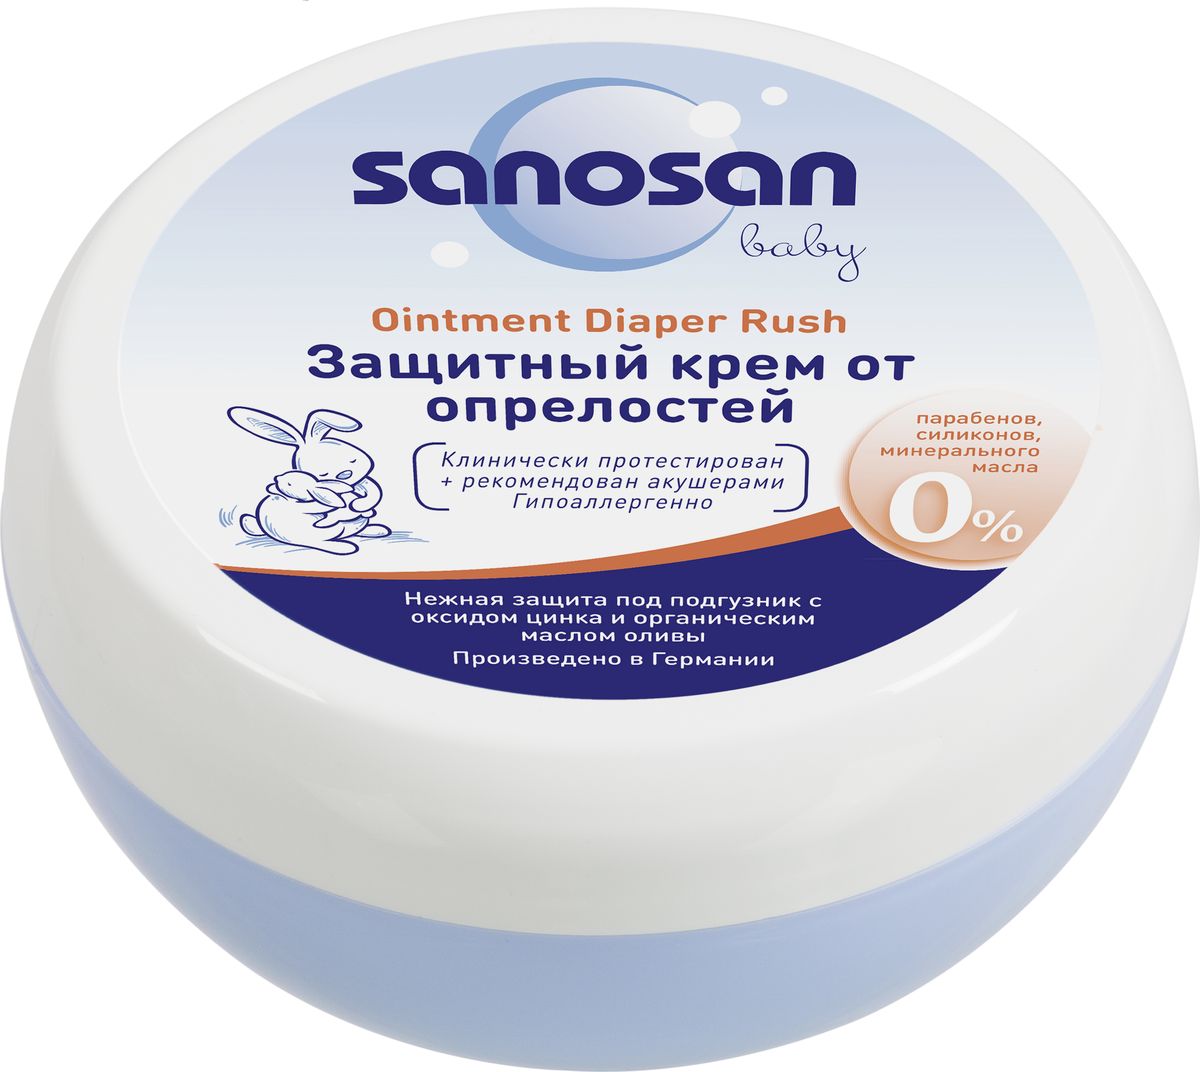 купить Sanosan Защитный крем от опрелостей 150 мл - заказ и доставка в Москве и Санкт-Петербурге